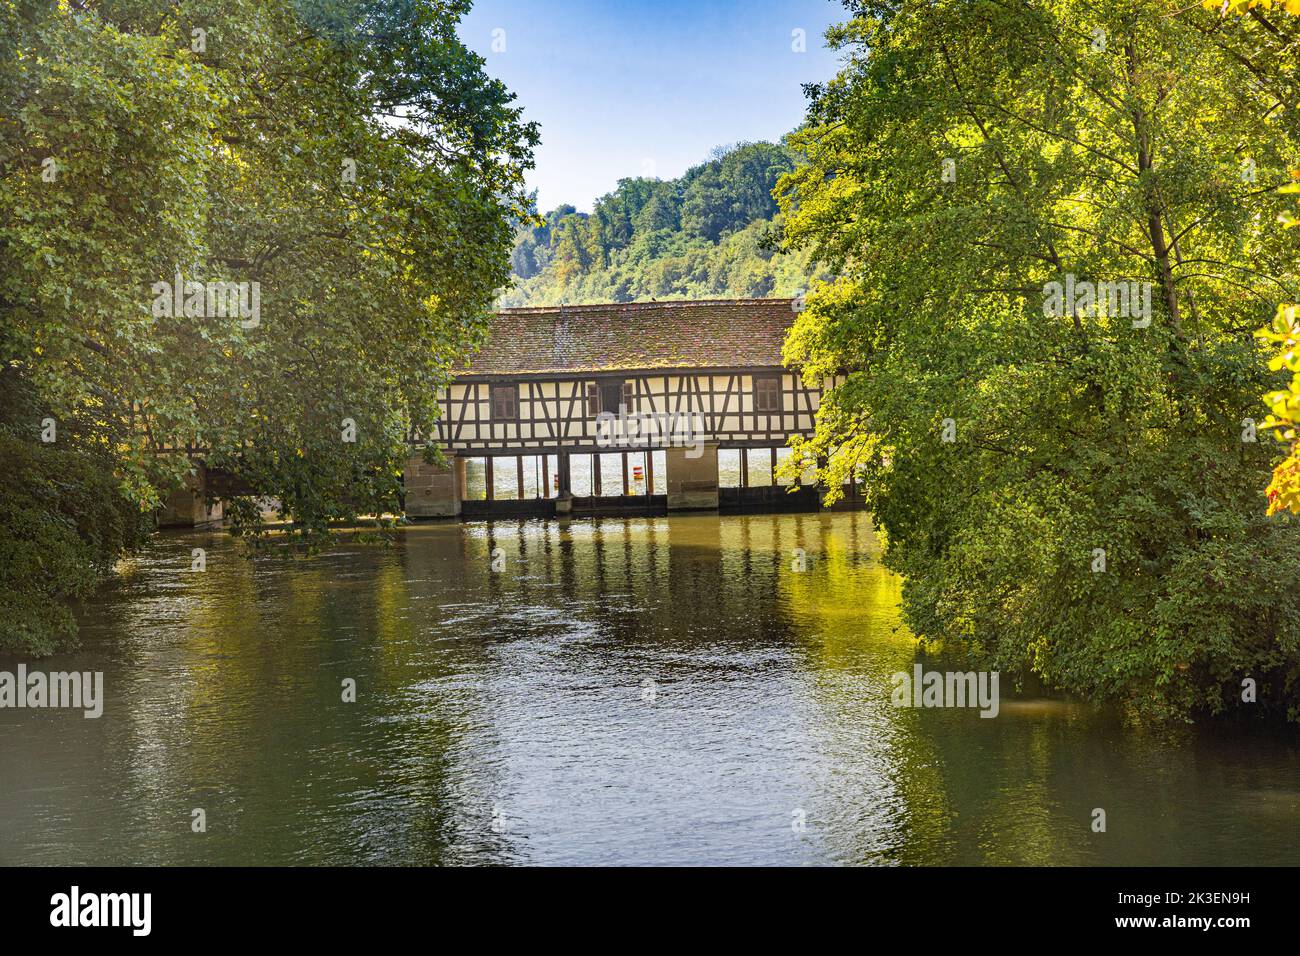 Historic Truss Bridge (Water house) on the Neckar river, Esslingen, Baden-Württemberg, Germany Stock Photo